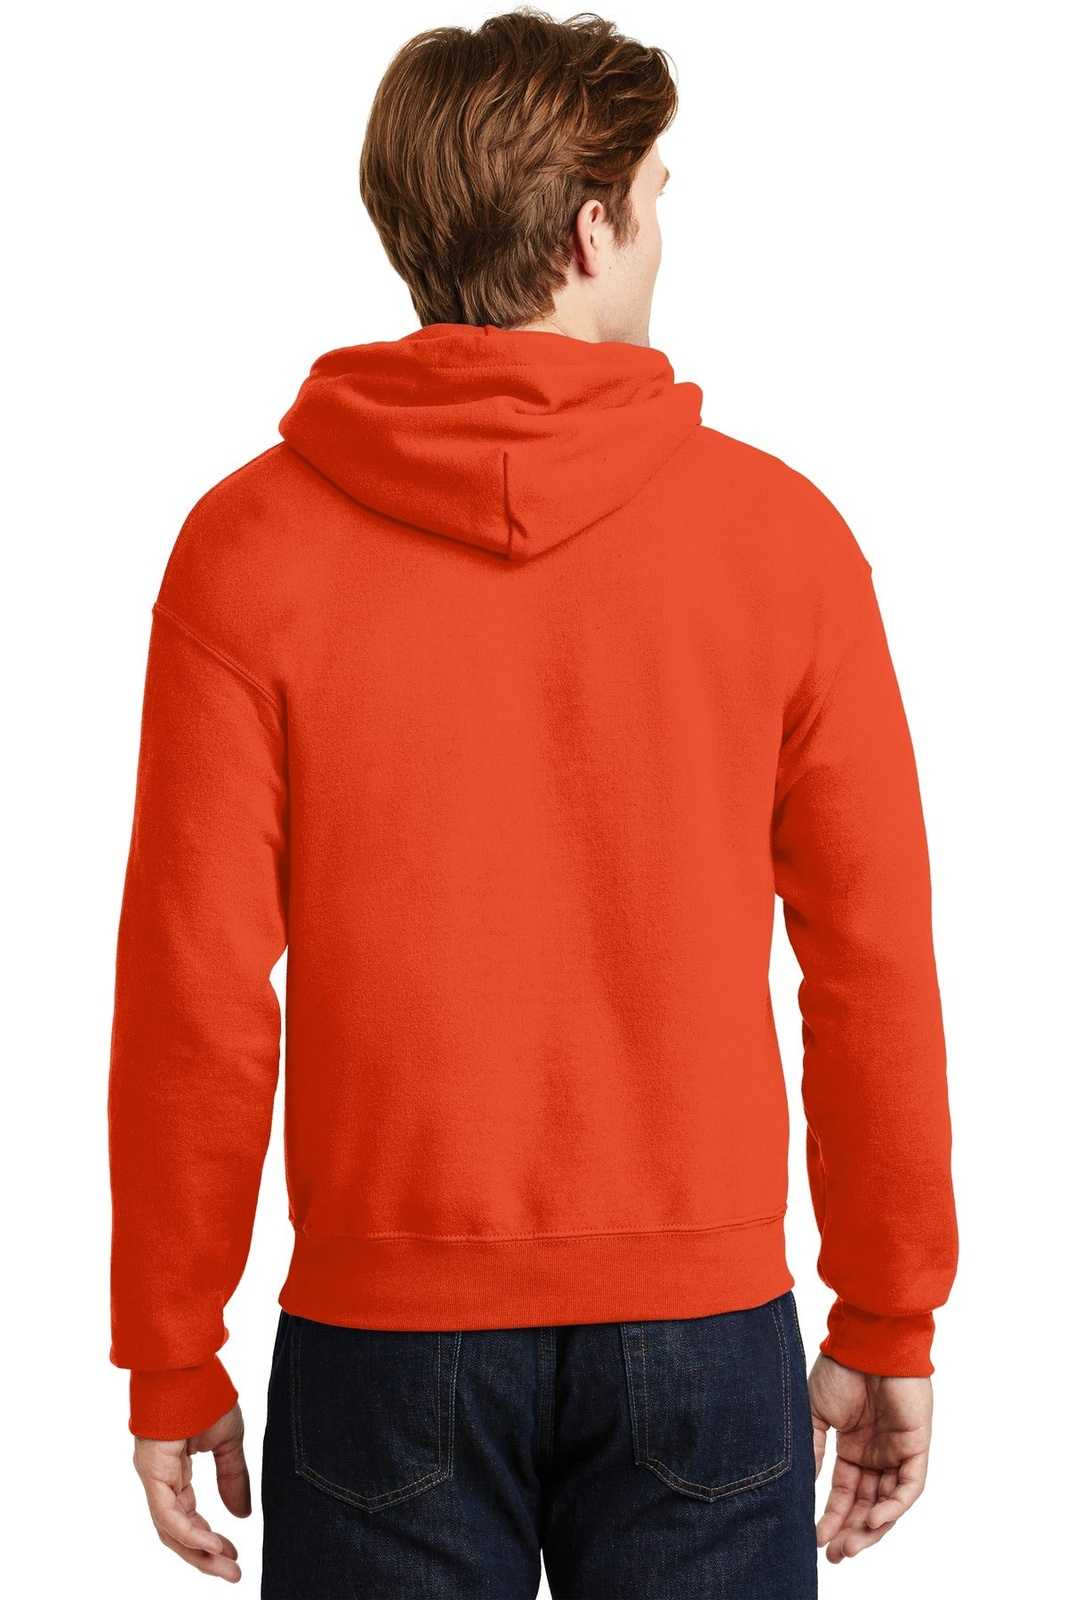 Gildan 18500 Heavy Blend Hooded Sweatshirt - Orange - HIT a Double